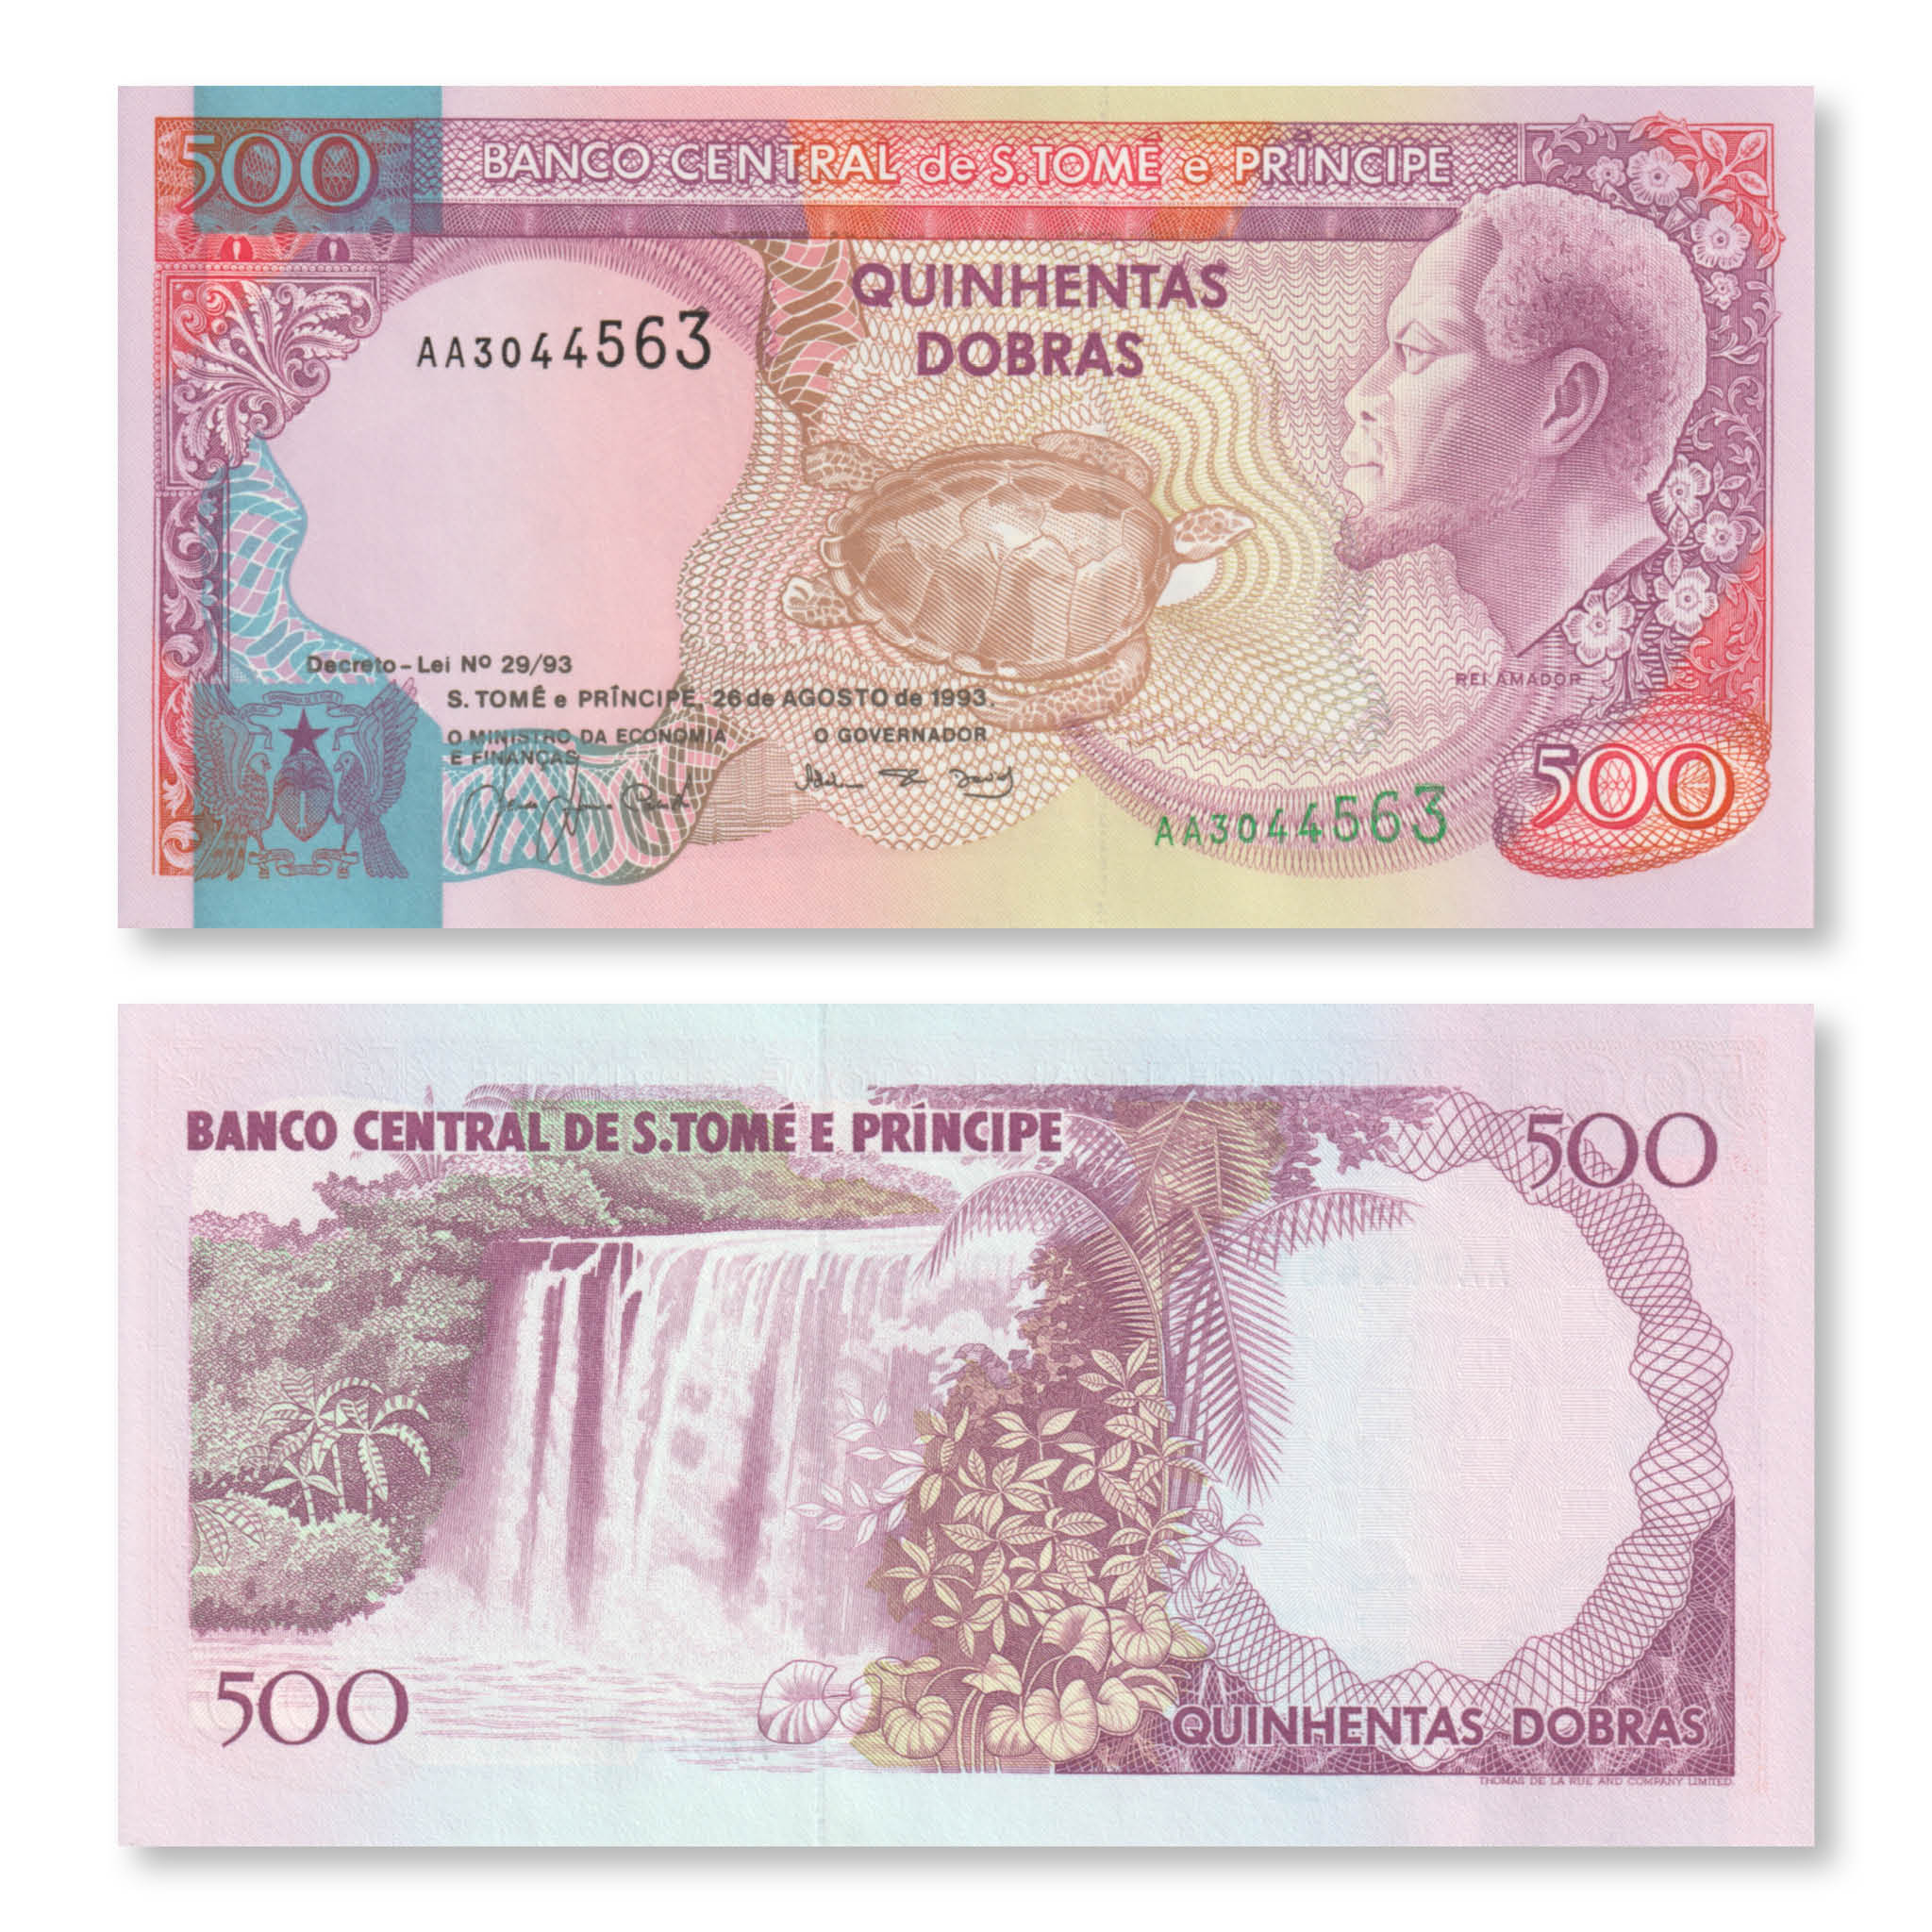 São Tomé & Príncipe 500 Dobras, 1993, B301a, P63, UNC - Robert's World Money - World Banknotes